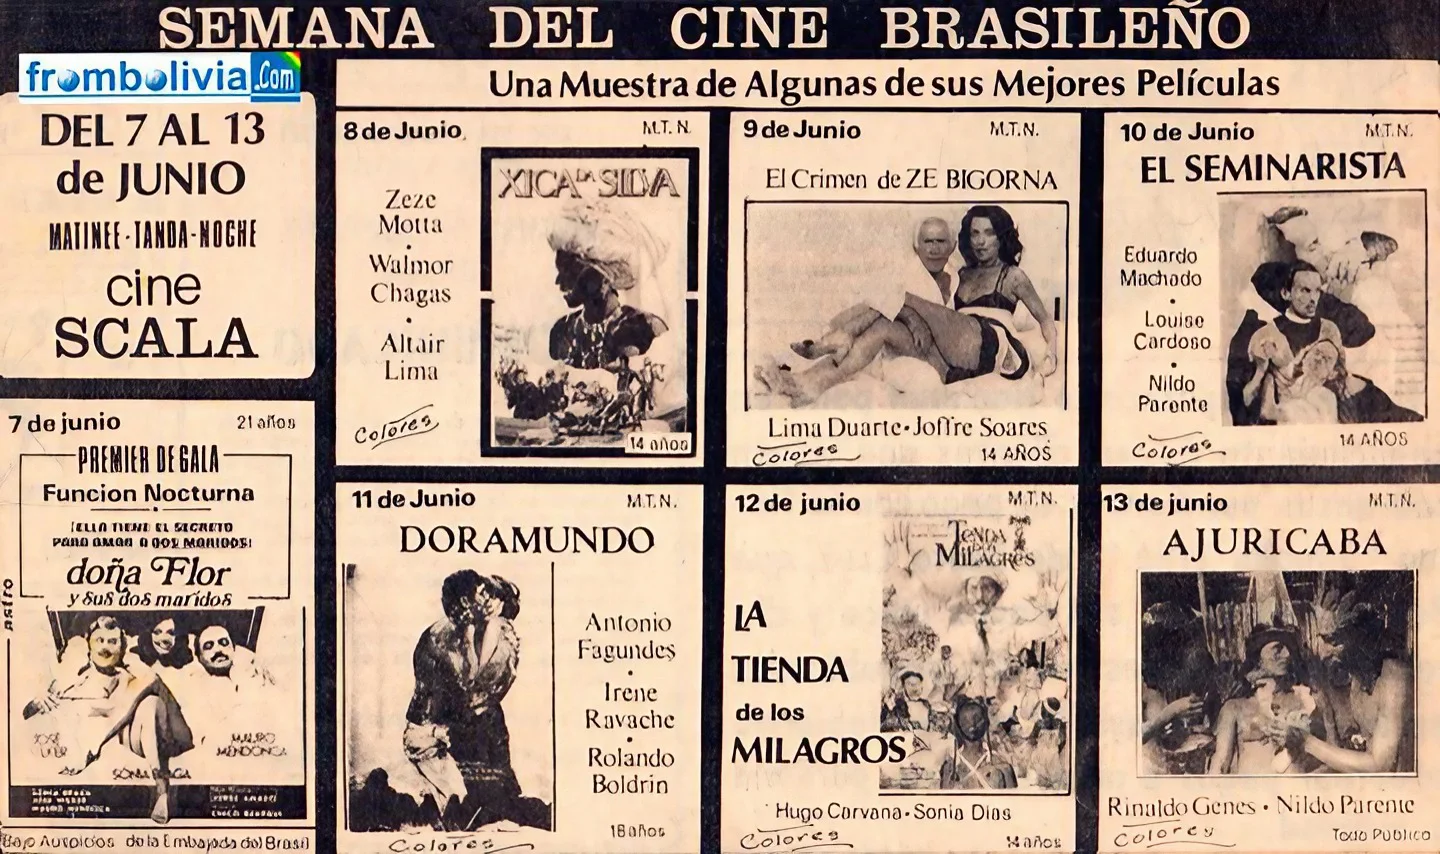 Películas exhibidas en la Semana del Cine Brasileño